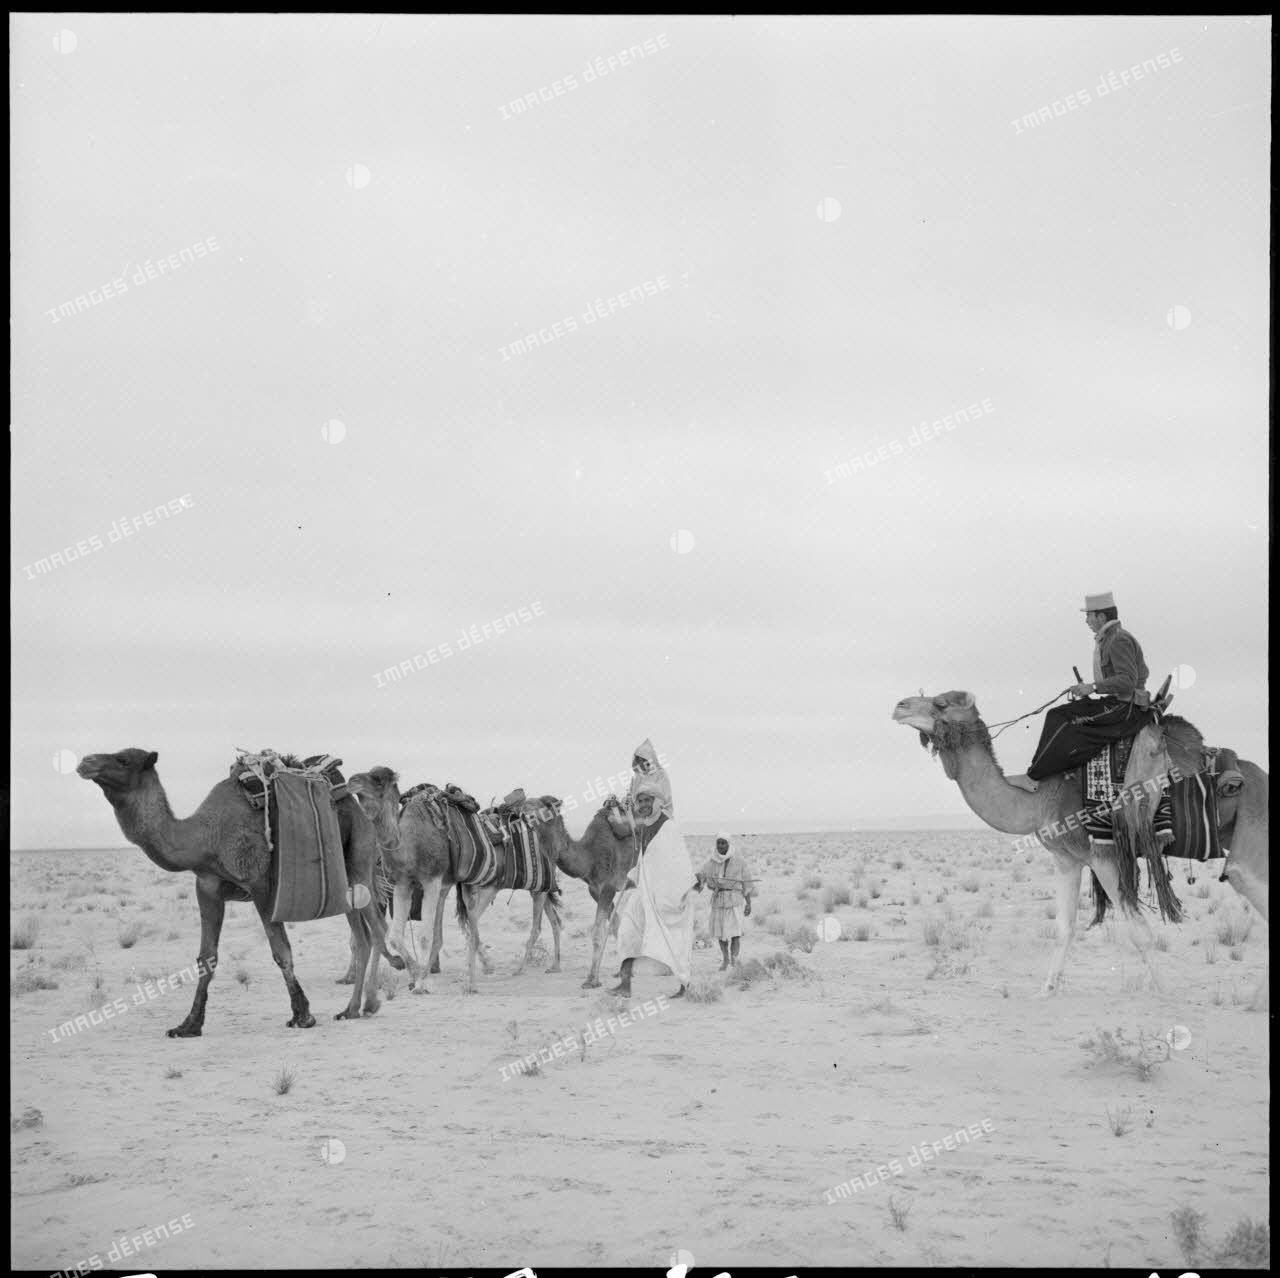 La patrouille de méharistes de la compagnie méhariste de l'erg oriental (CMEO) laisse repartir une caravane après un contrôle dans la région d'El Oued.